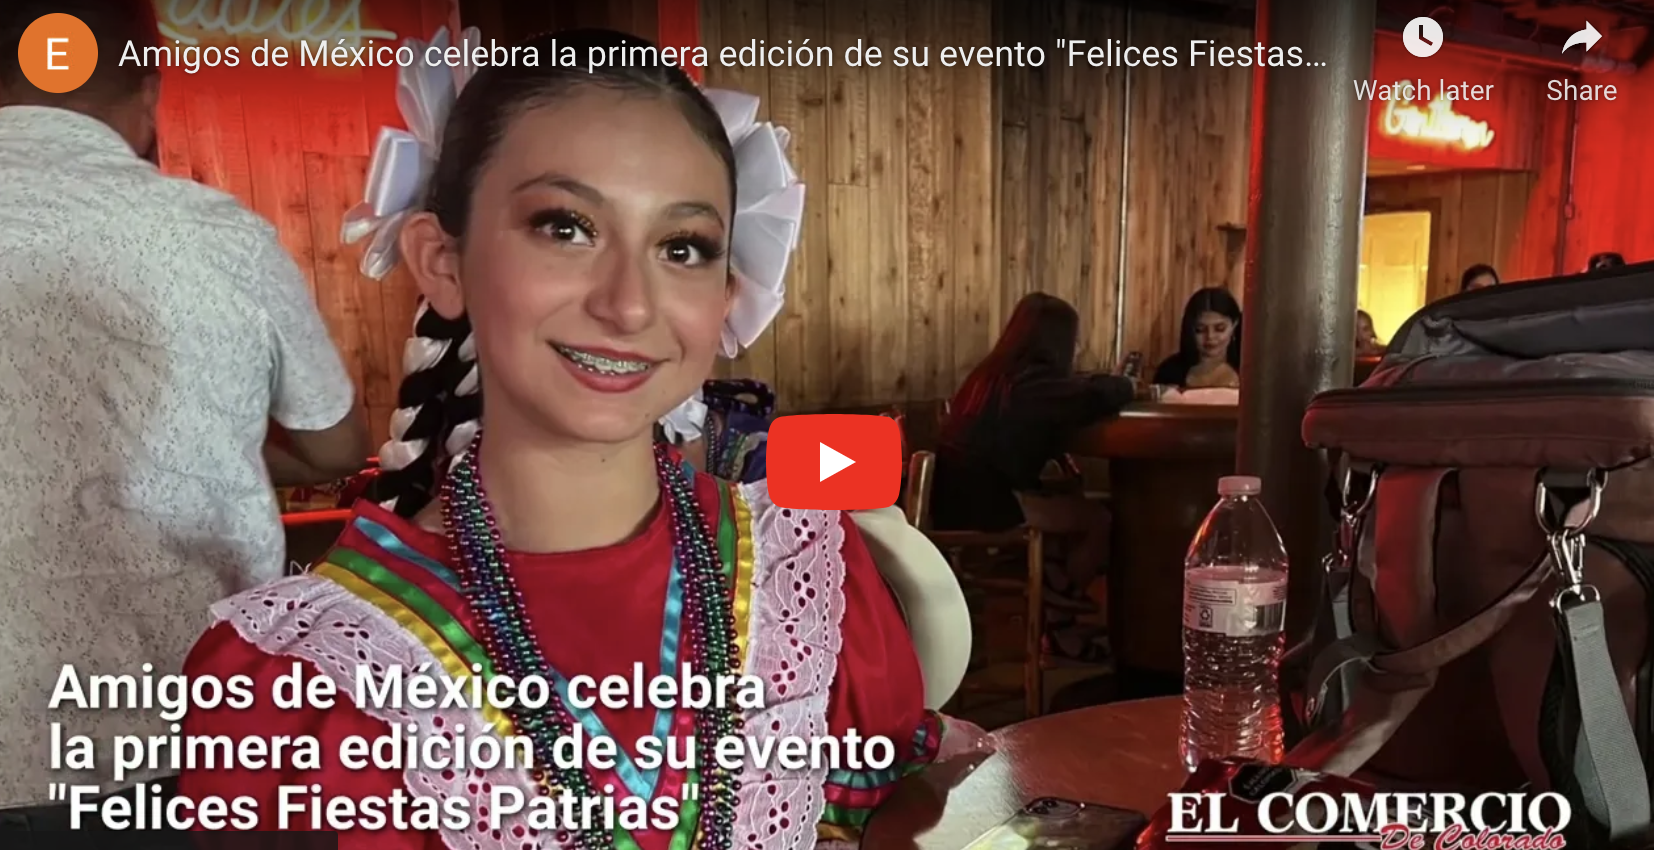 Amigos de México celebran la primera edición de su evento “Felices Fiestas Patrias”